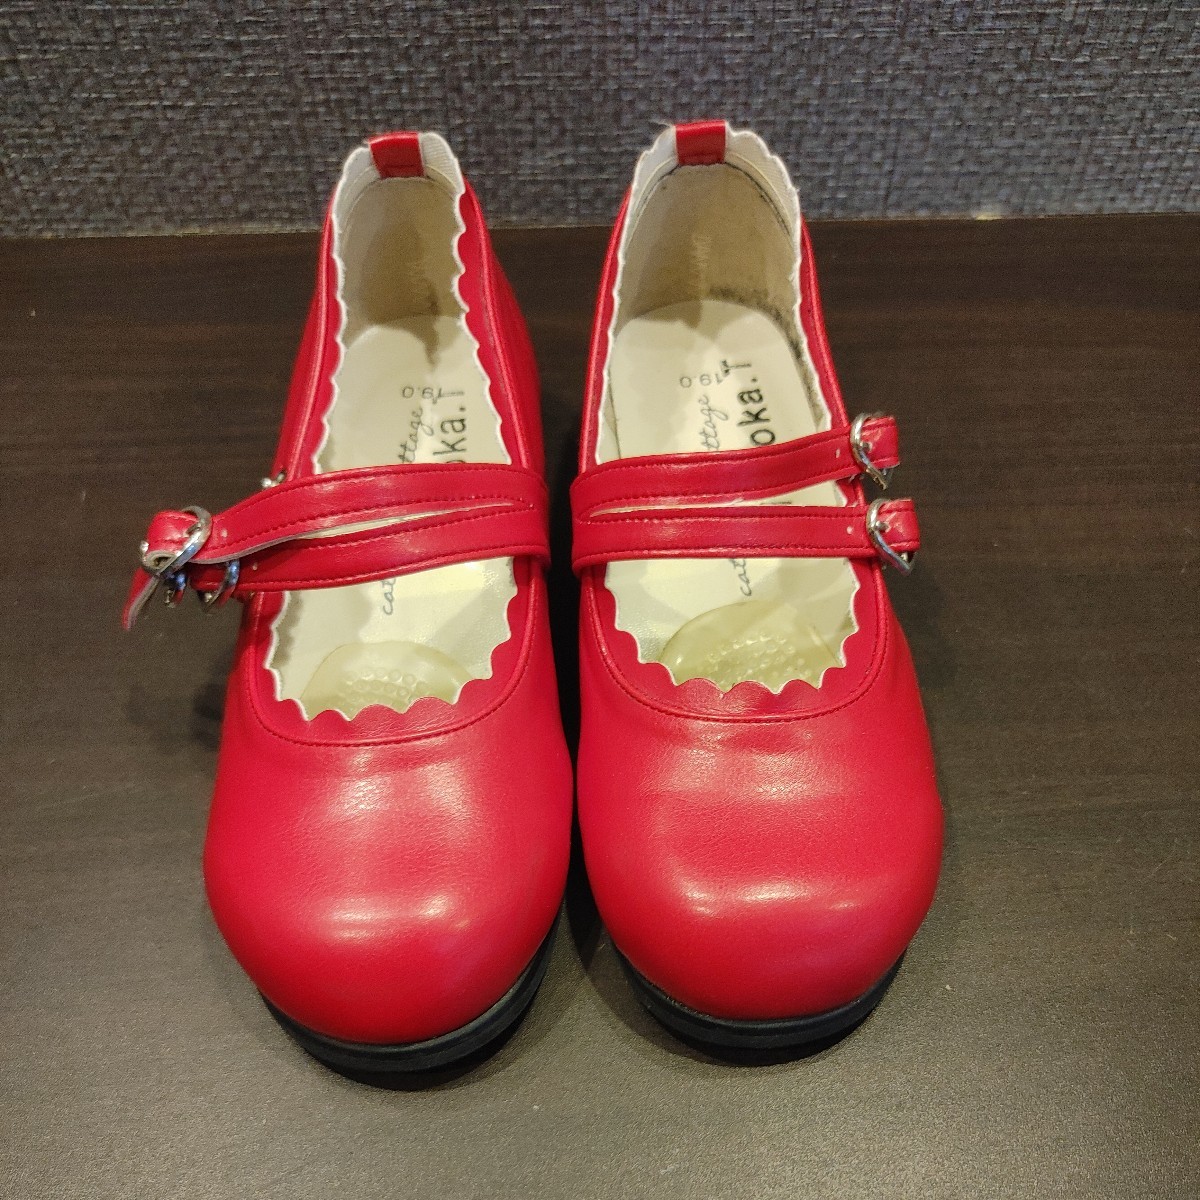 Платье обуви формальная обувь презентация красная девочка